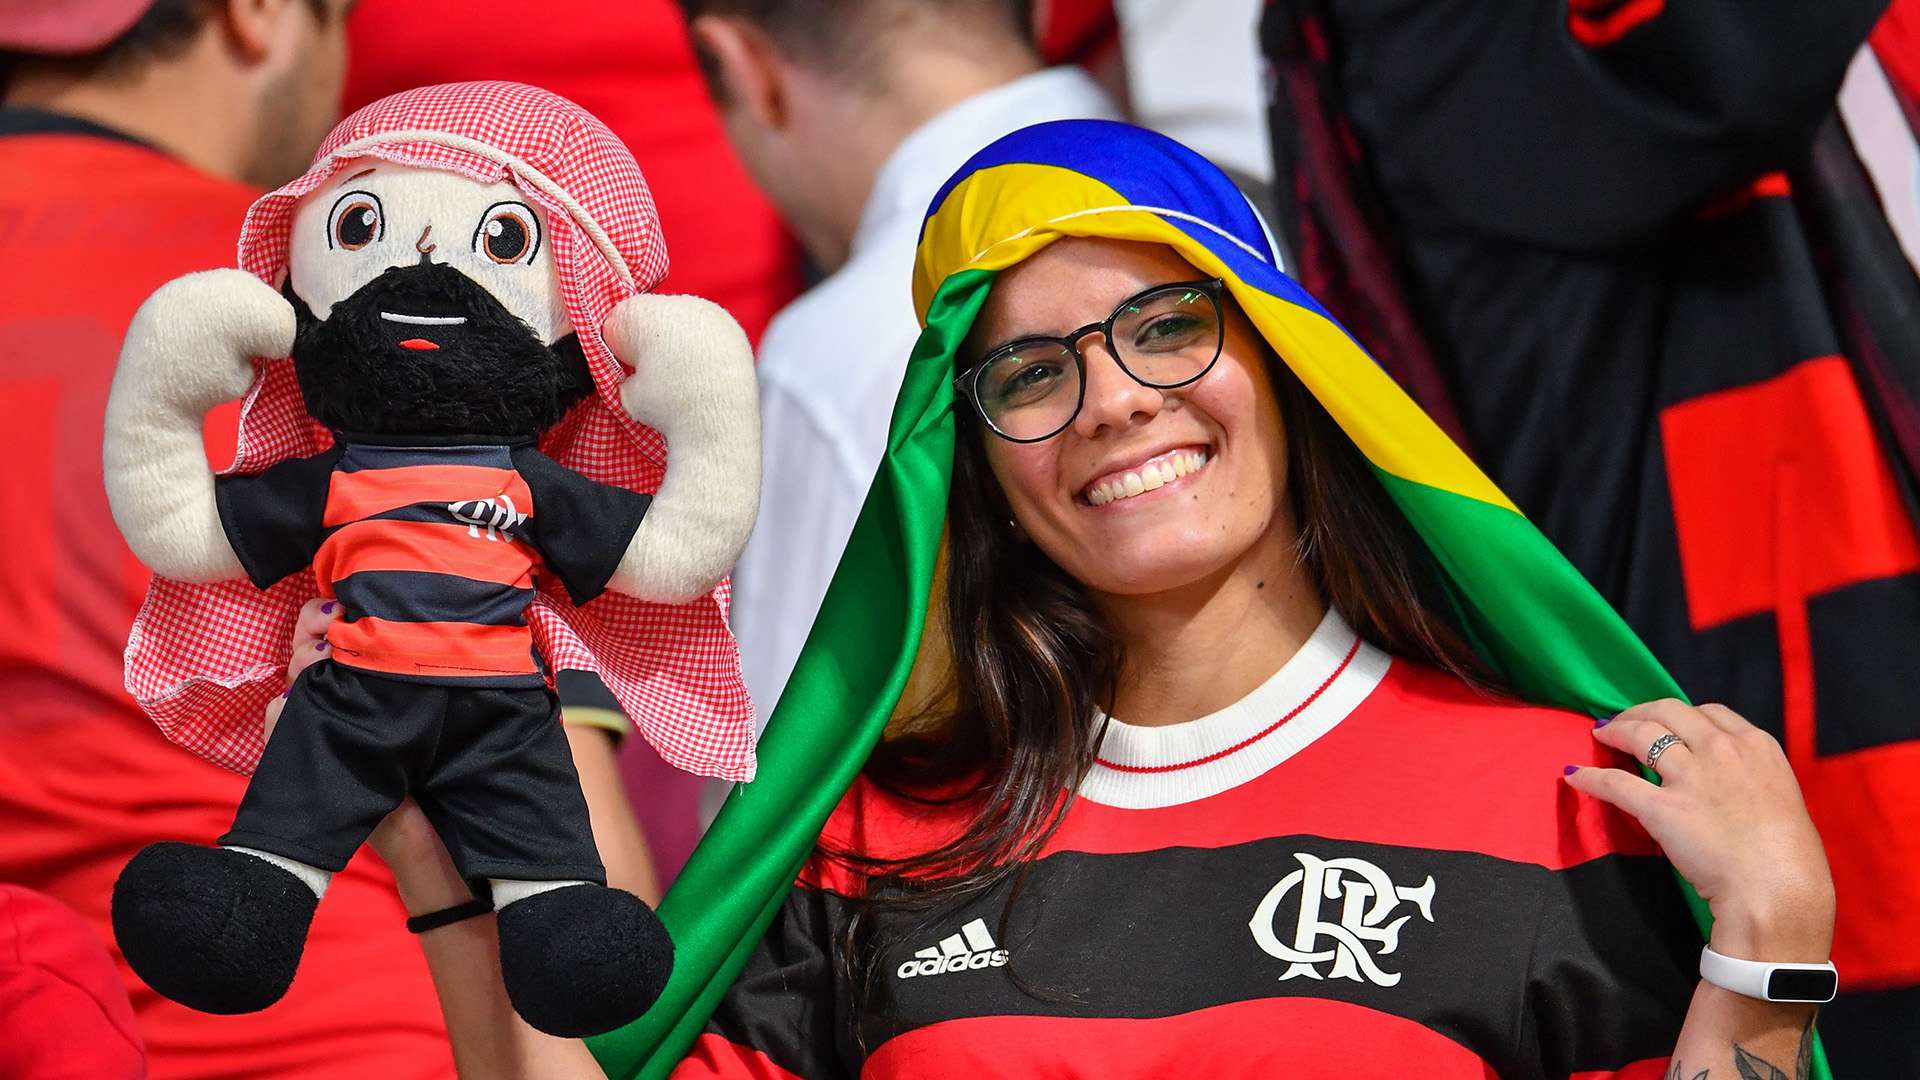 Torcida Flamengo Al-Hilal Mundial de Clubes 17 12 2019